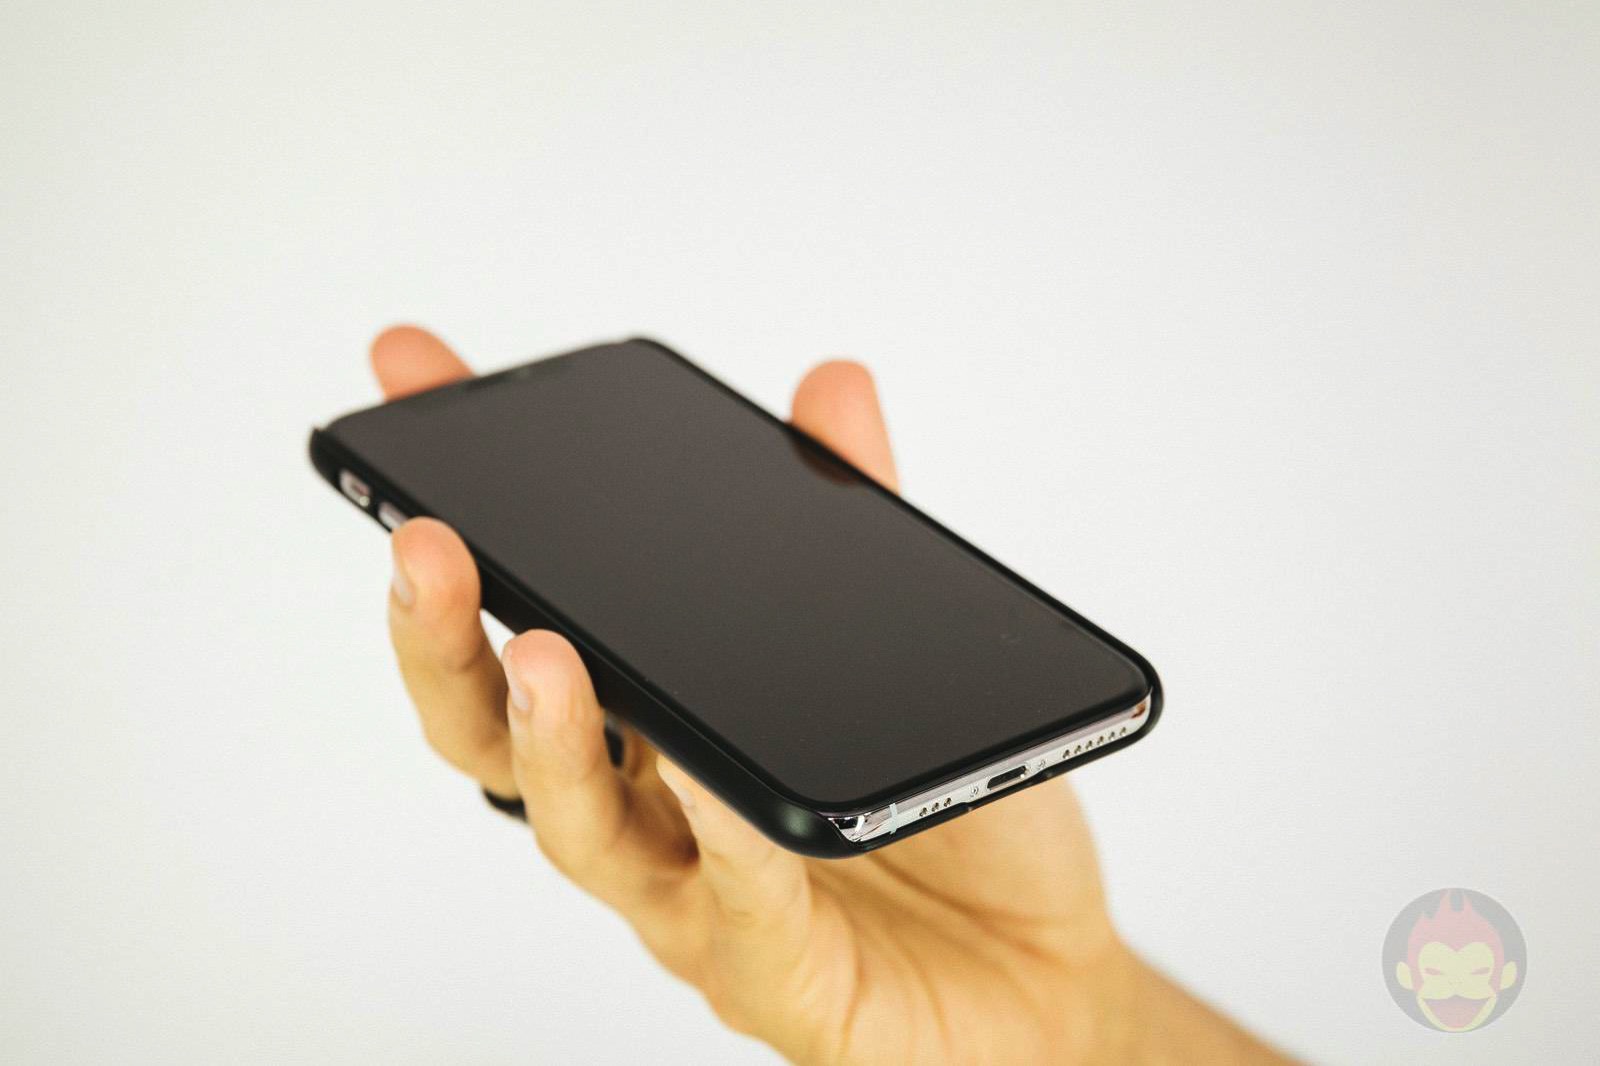 Spigen-Thin-fit-for-iPhoneXS-06.jpg